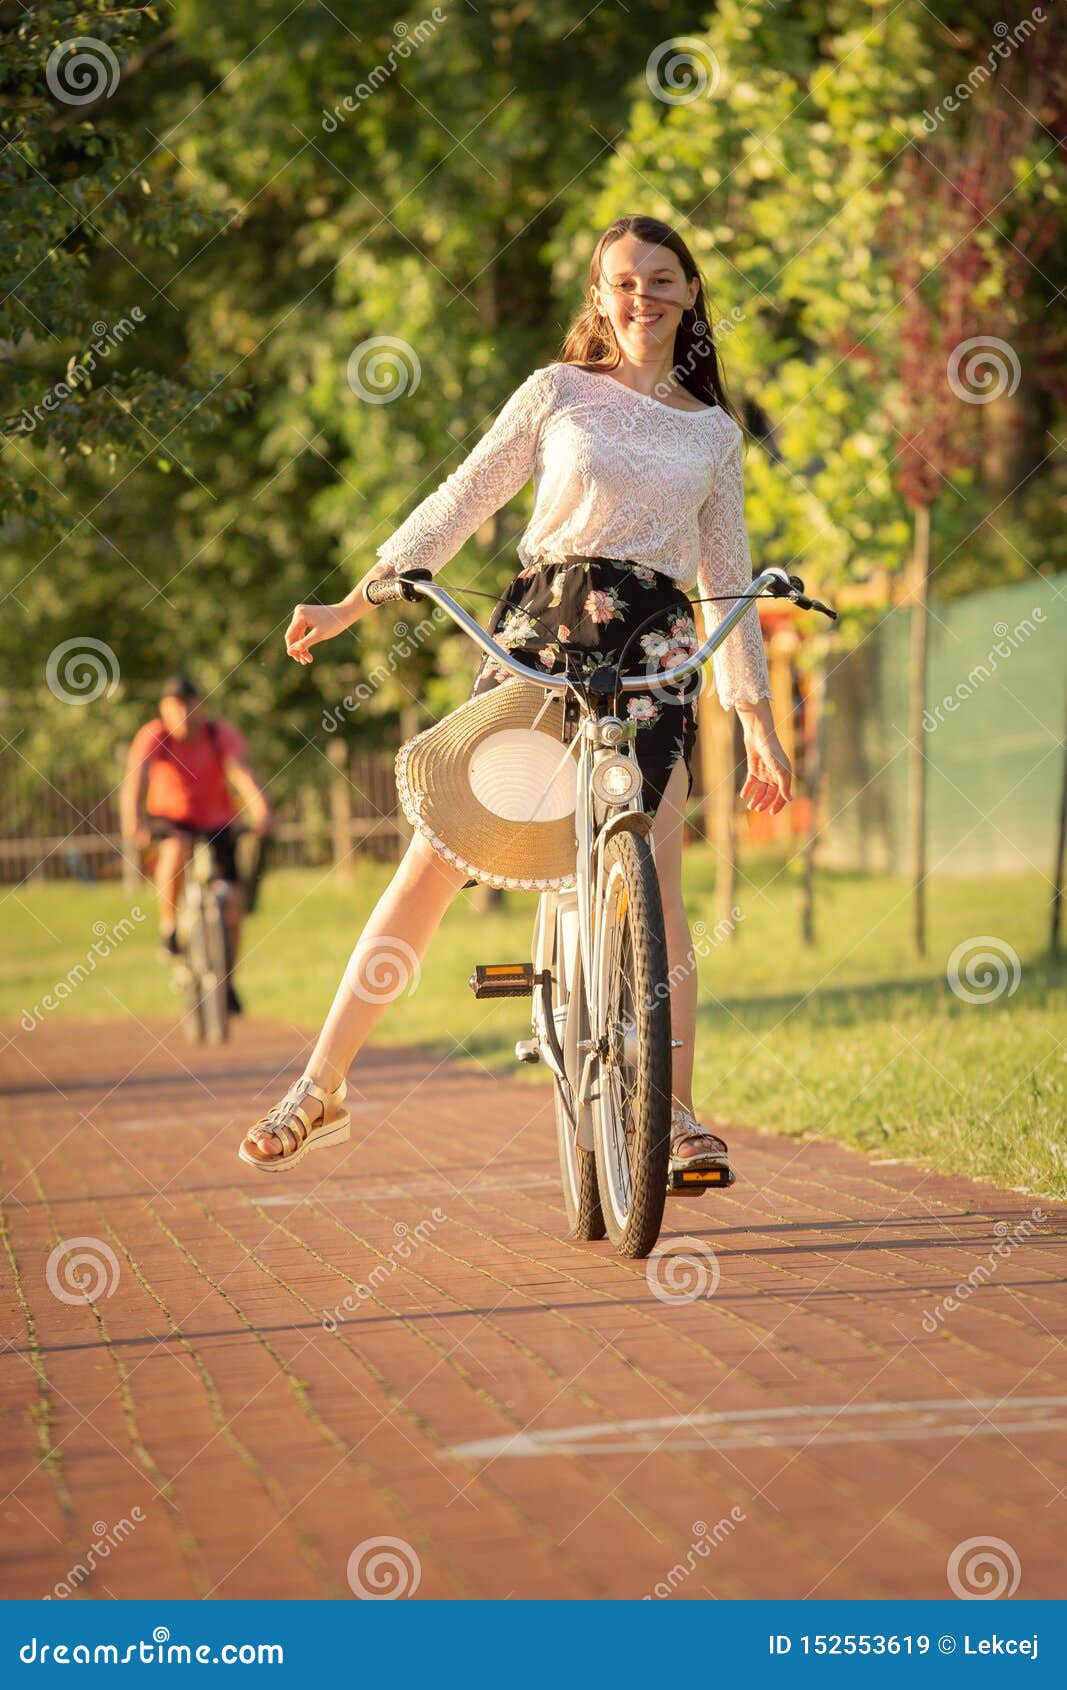 niet verwant Artefact Glans Meisje op fiets stock afbeelding. Image of activiteit - 152553619